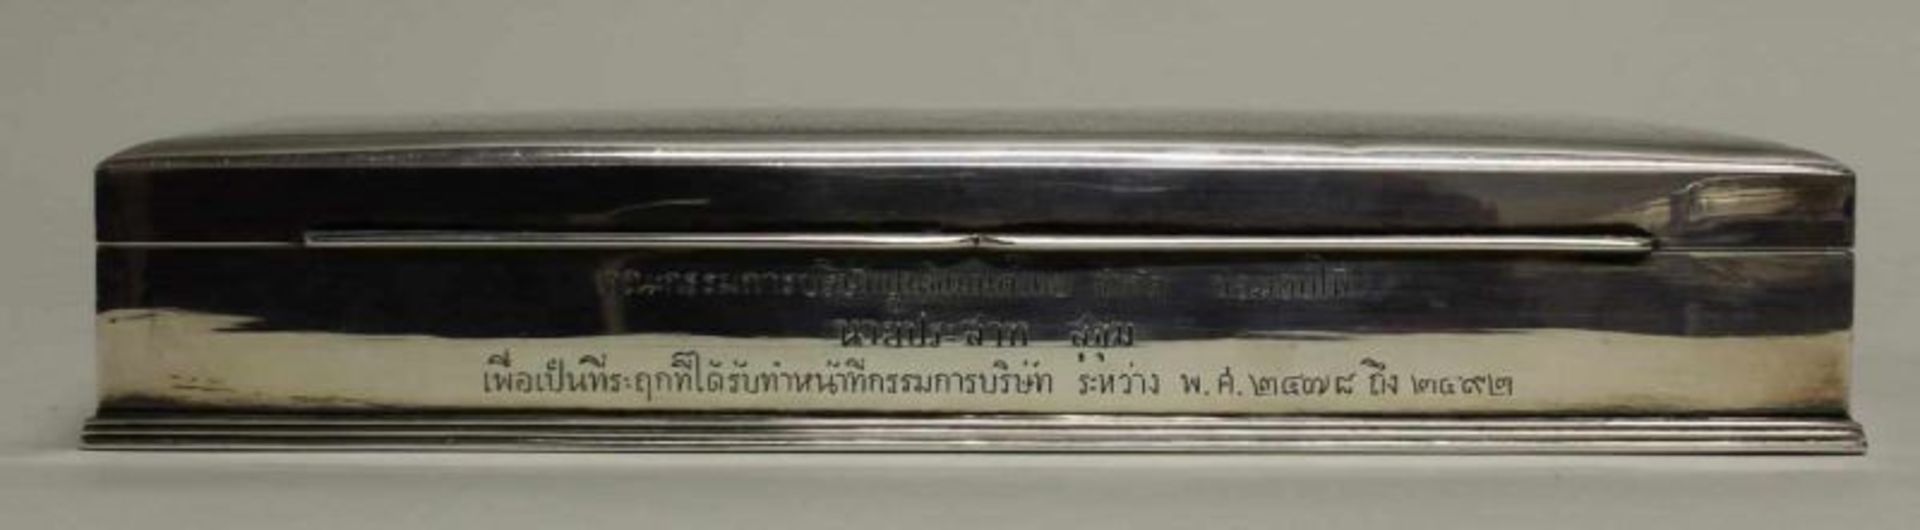 Zigarettendose, Silber, wohl Orient, ornamental, 4 x 14.8 x 8.6 cm, ca. 355 g; Zigarettendose, - Image 2 of 5